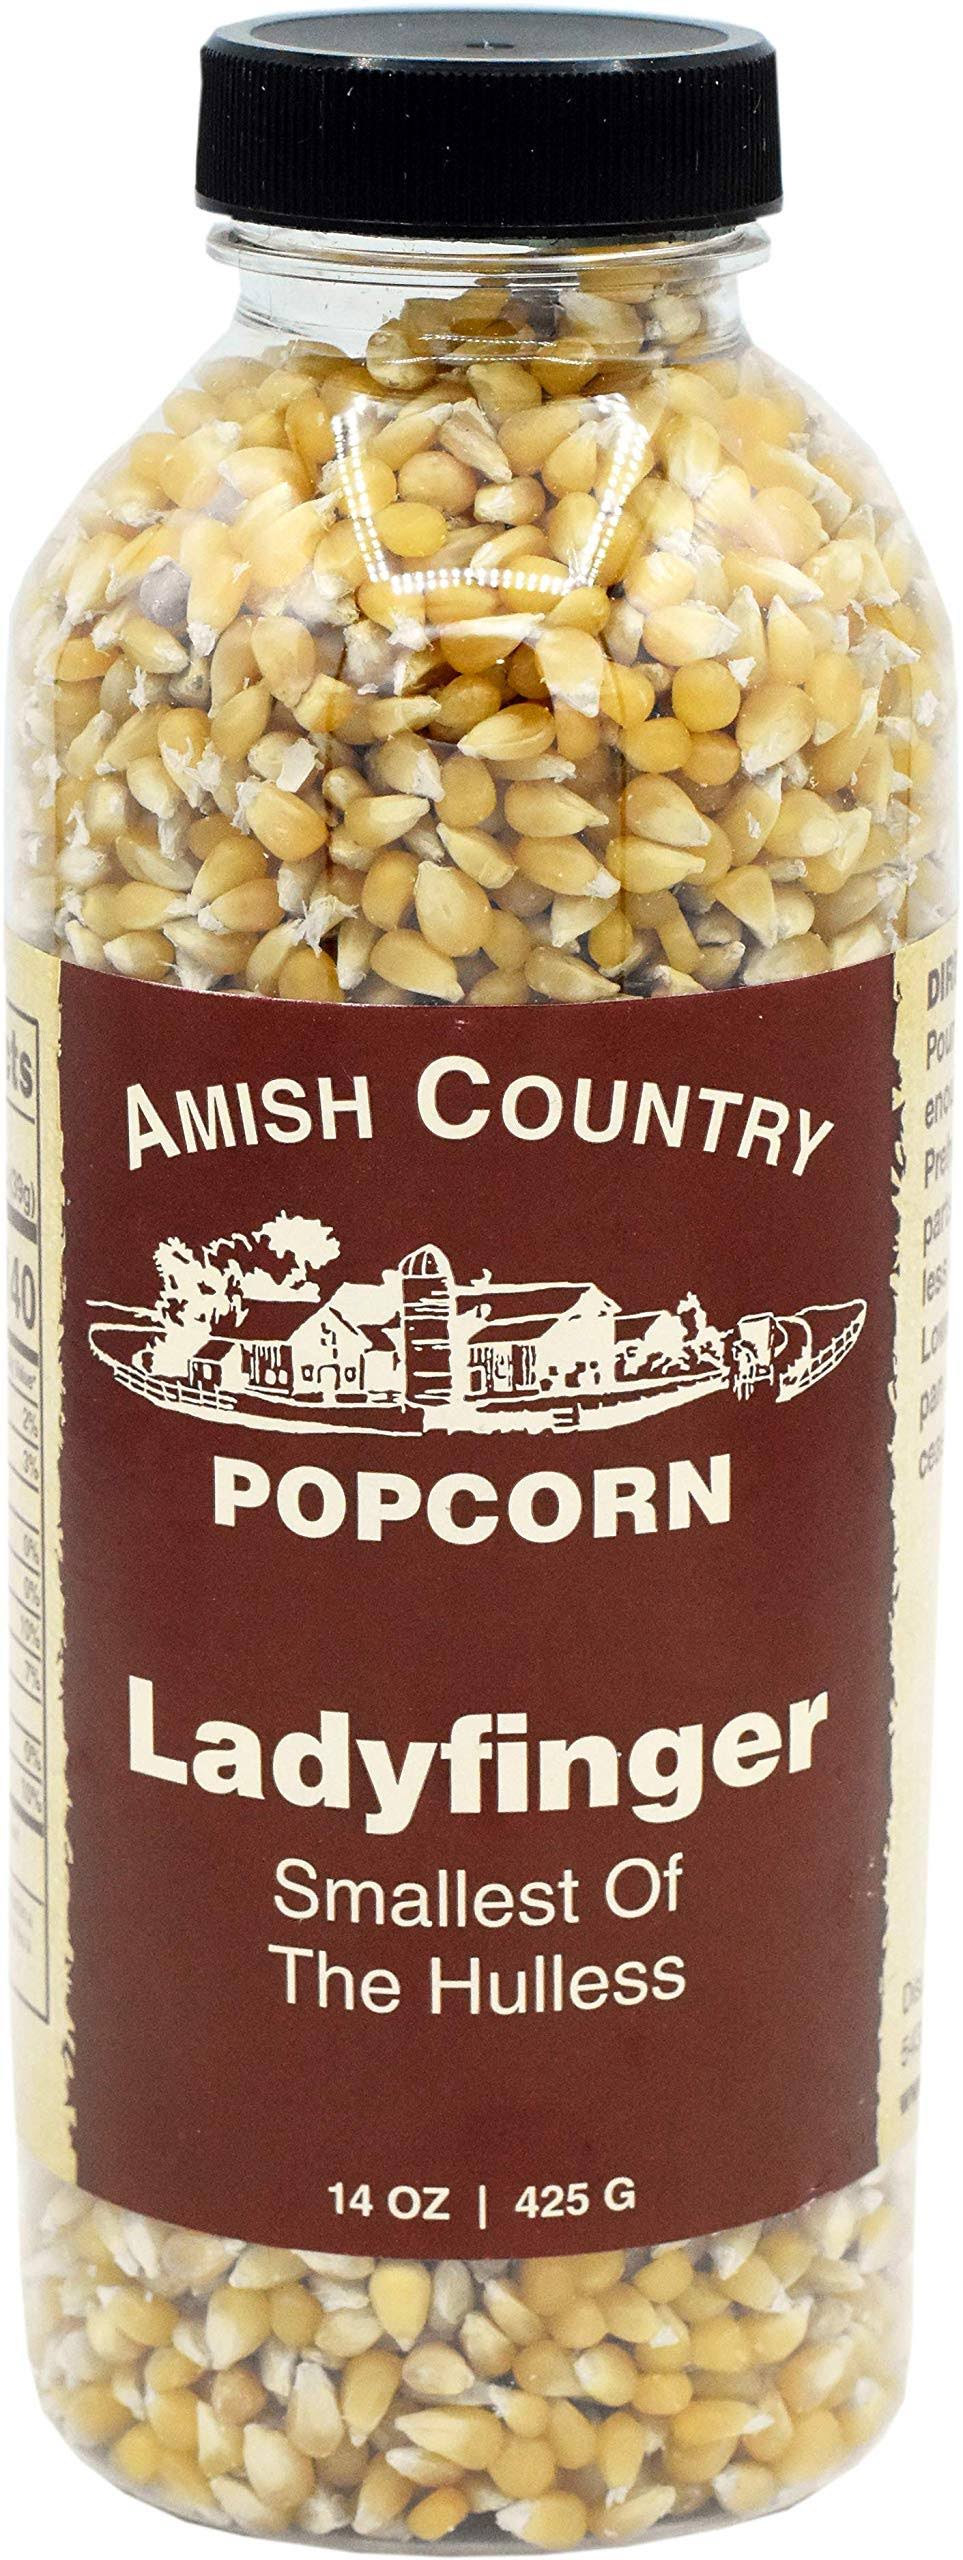 Amish Country Ladyfinger Popcorn Bottle, 14 oz